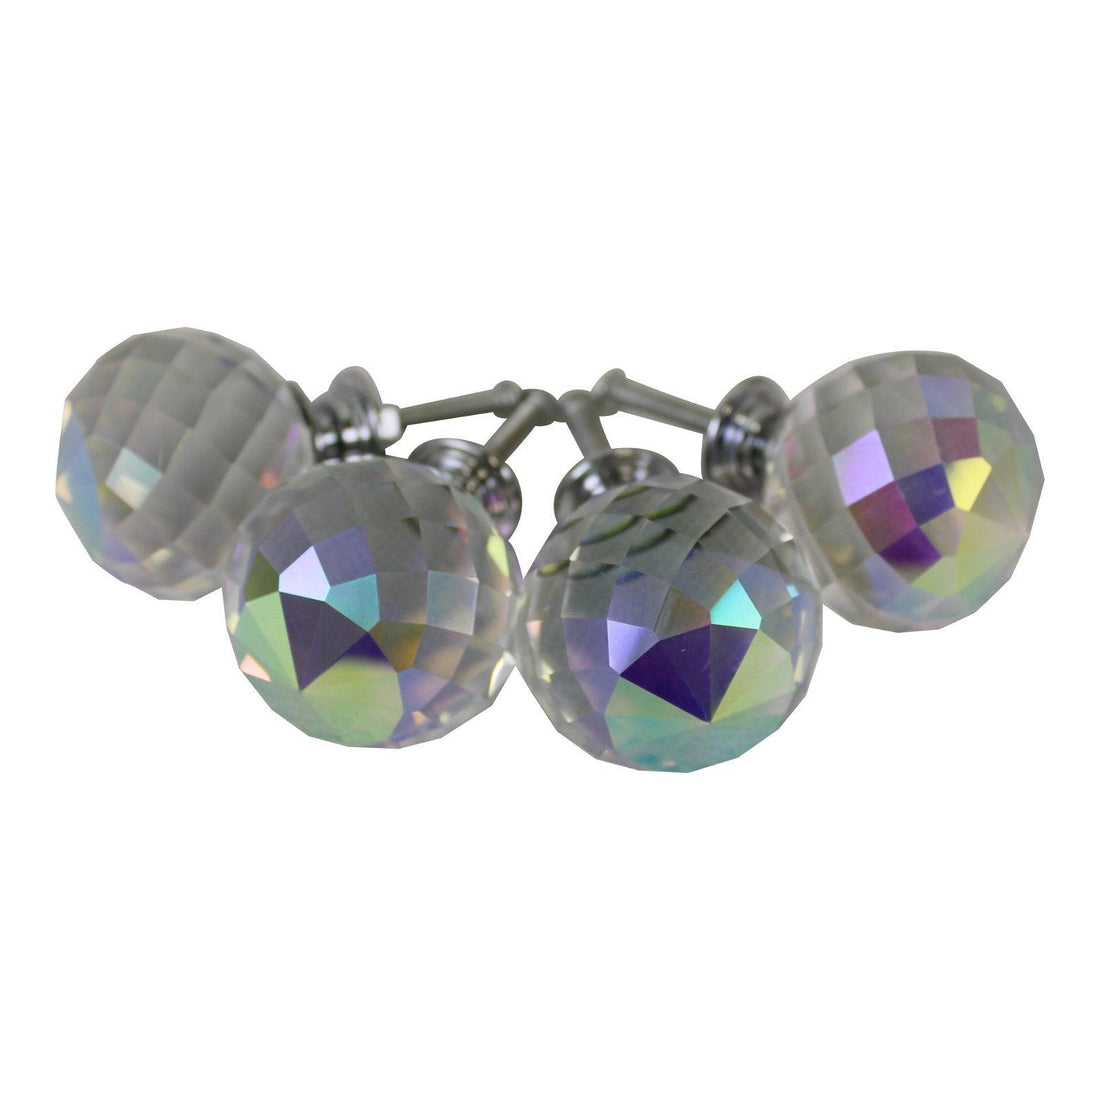 4cm Crystal Effect Doorknobs, Spherical, set of 4 - £22.99 - Doorknobs 